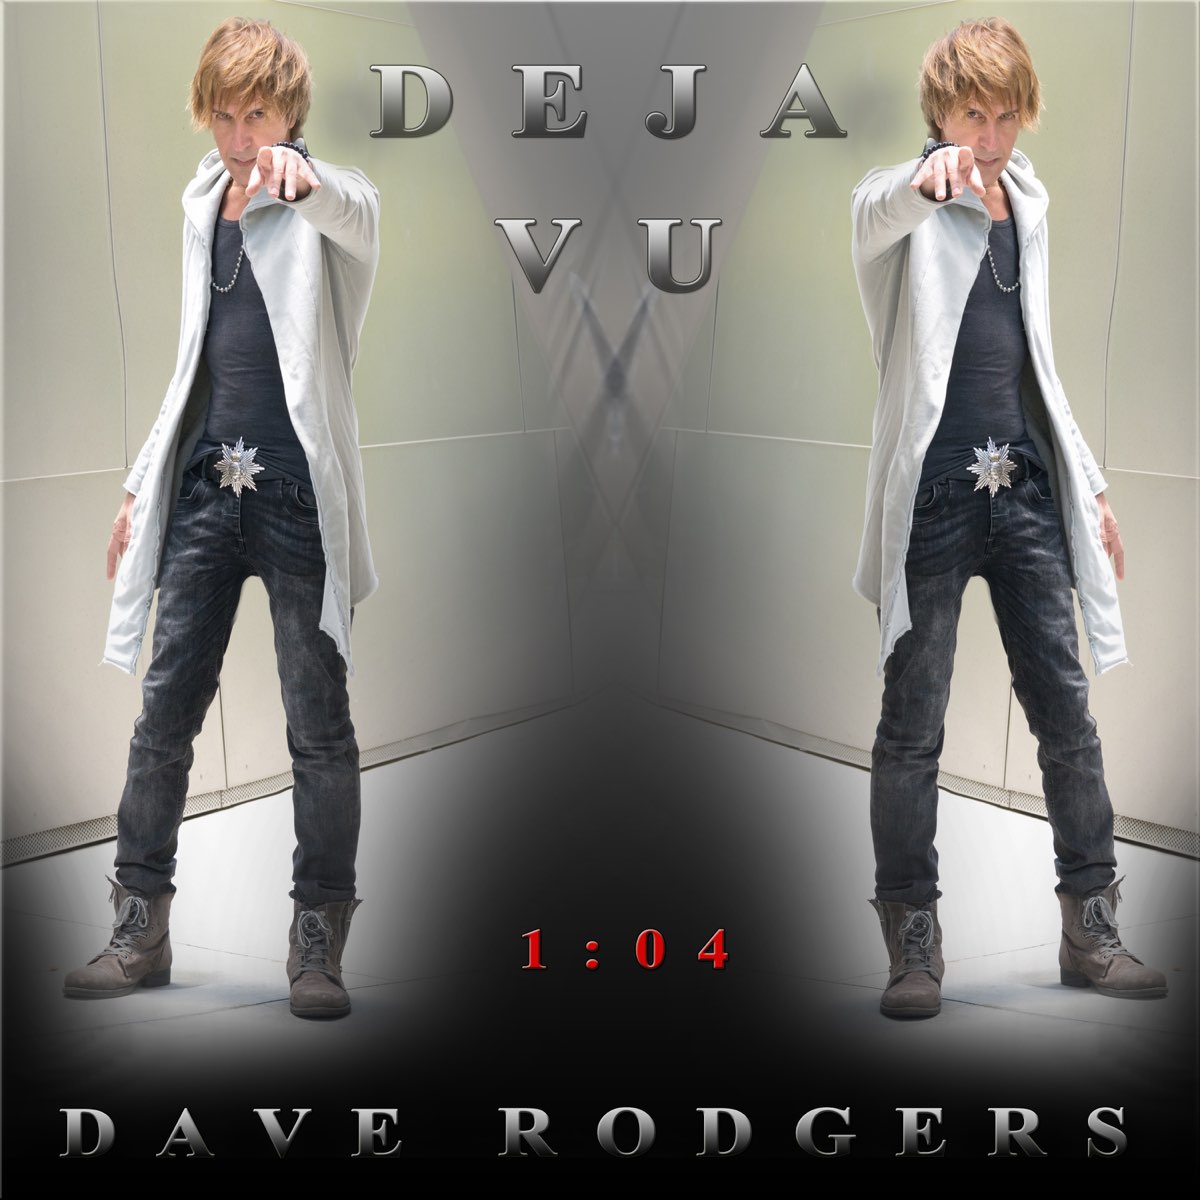 Dave rodgers deja vu. Dave Rodgers deja vu фото. Deja vu (Extended Version) Dave Rodgers. Deja vu (2020 Version) от Dave Rodgers.